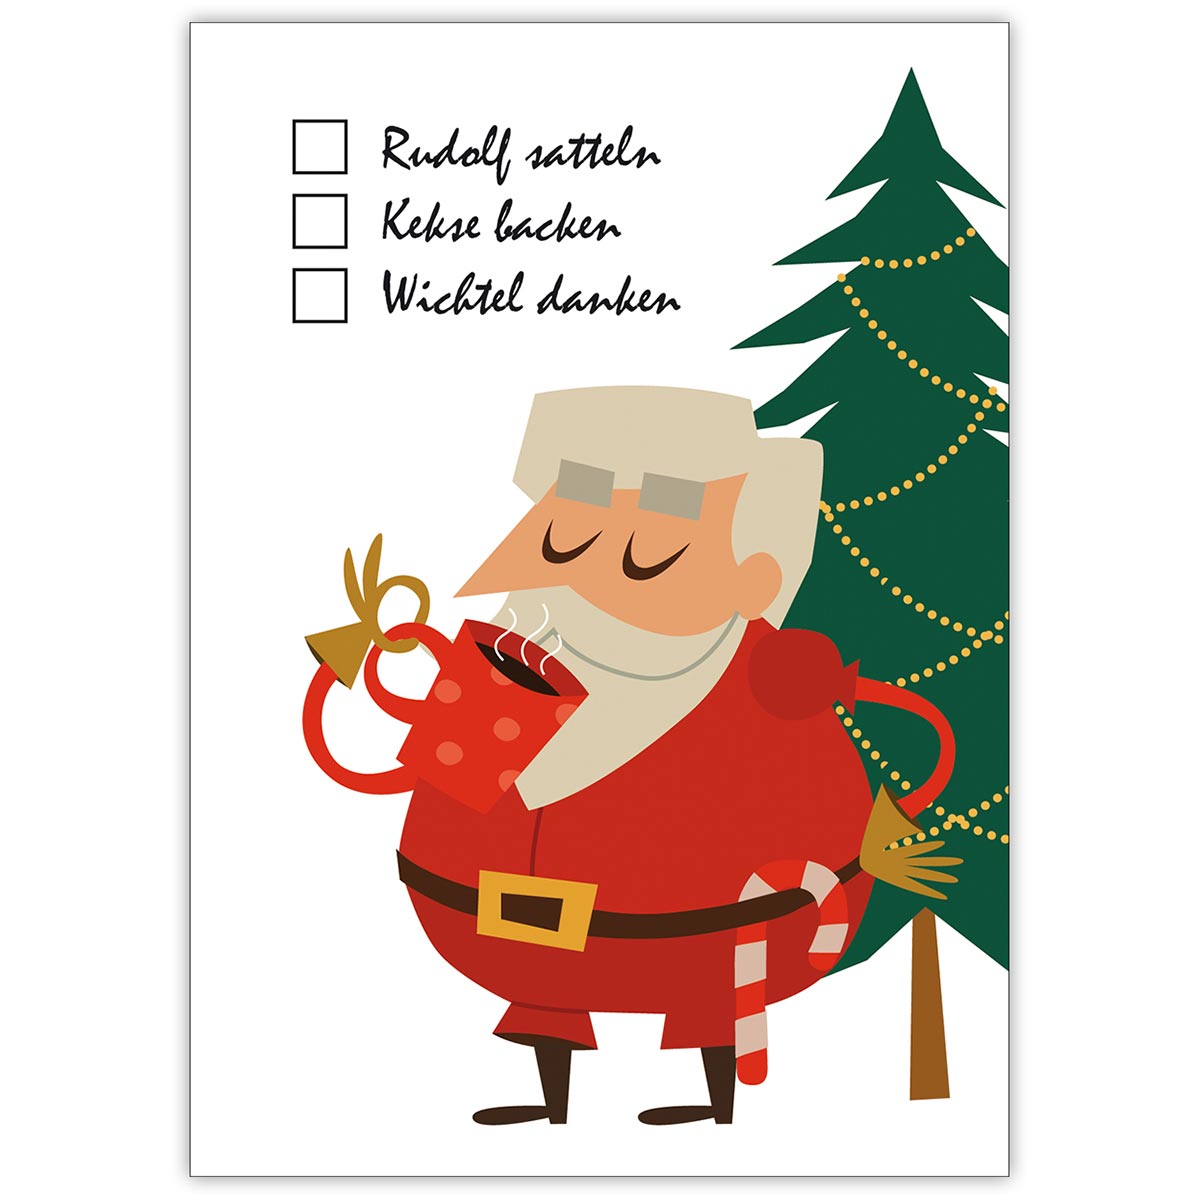 Komische Weihnachts To Do Liste: Rudolf satteln, Kekse backen, Wichtel danken